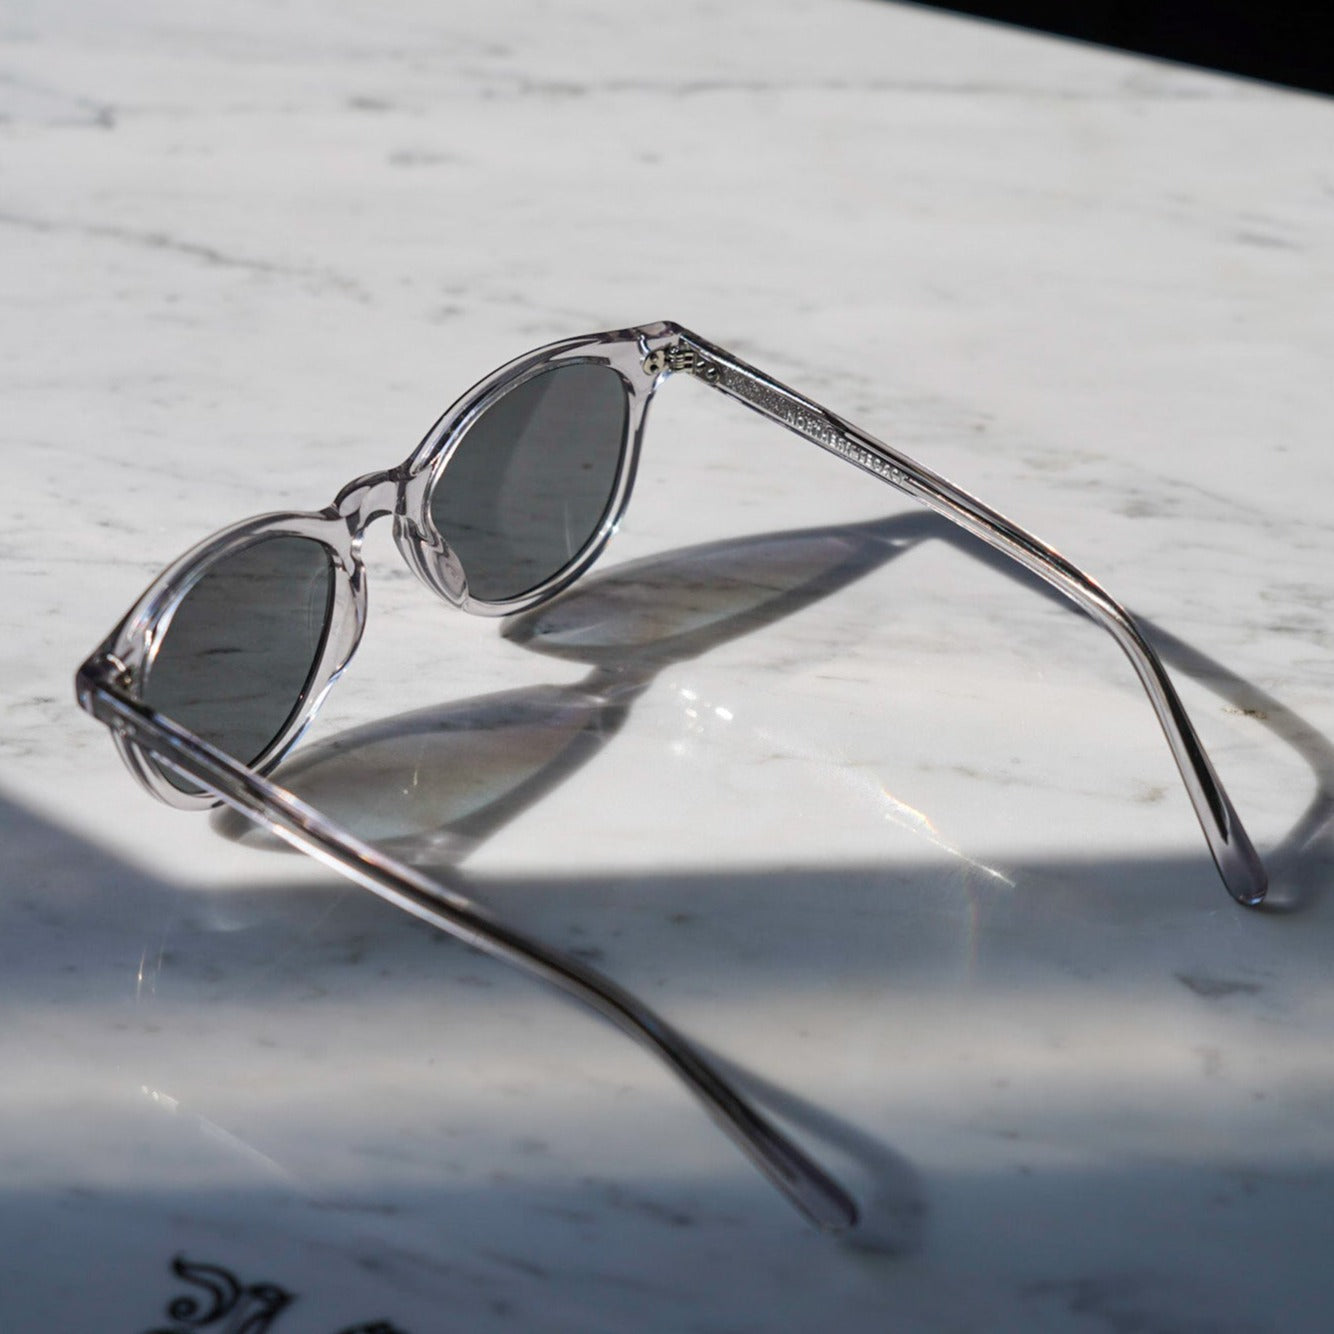 Explorer sunglasses - Transparent grey